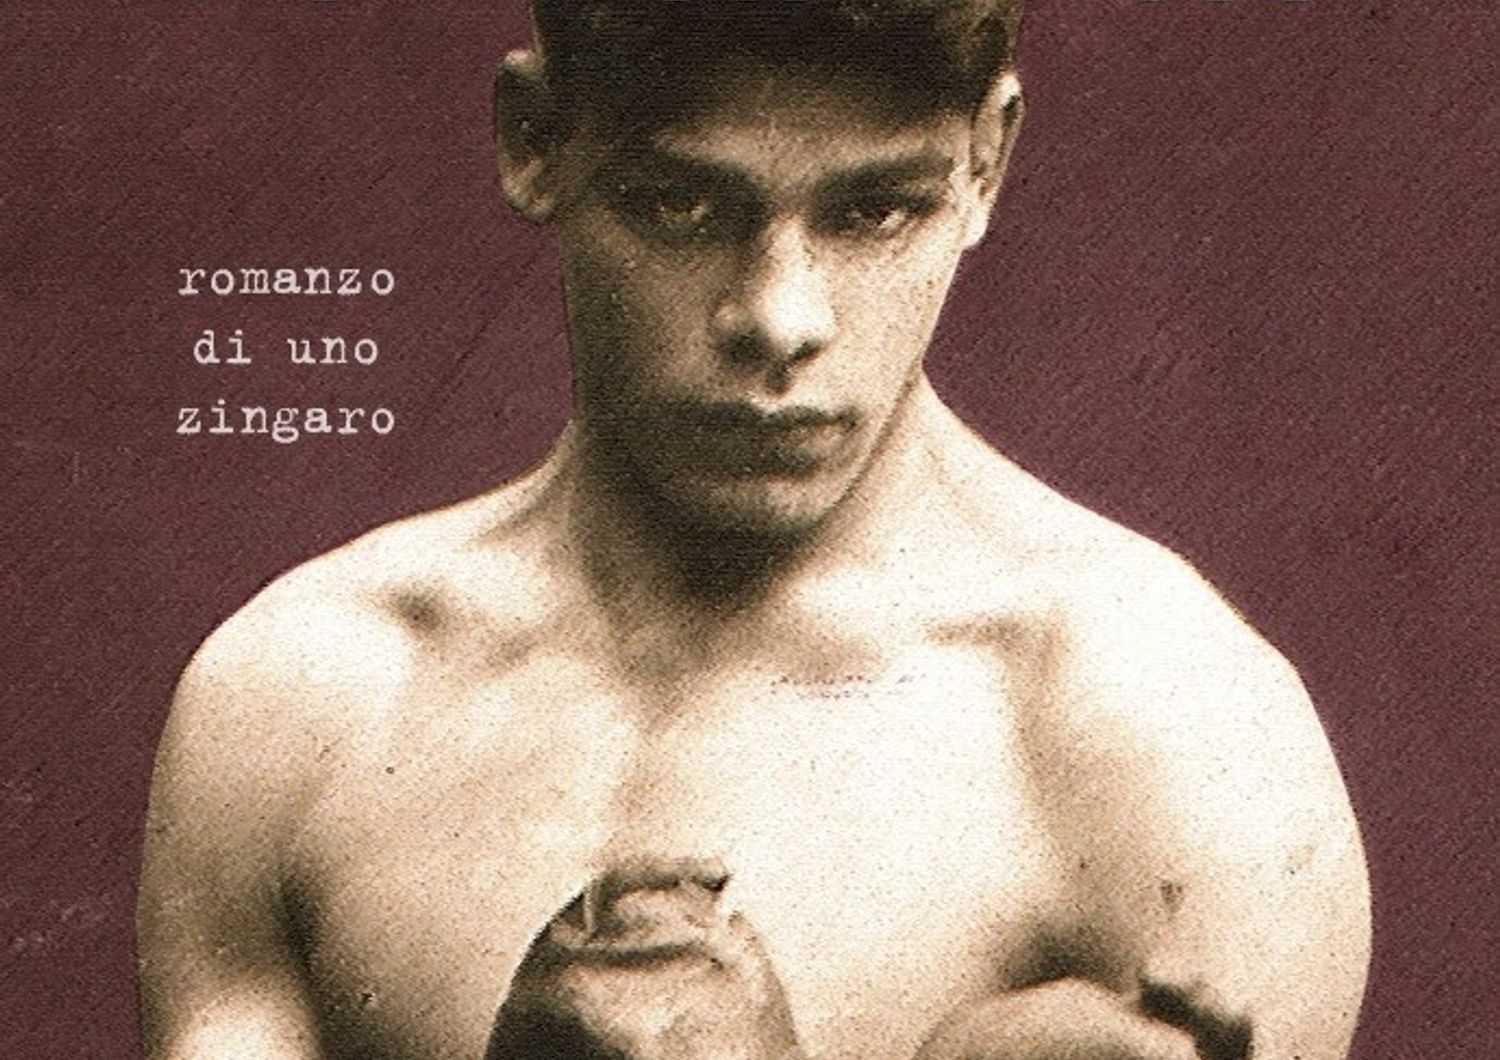 Storia di Rukeli, leggenda della boxe stroncato dal nazismo